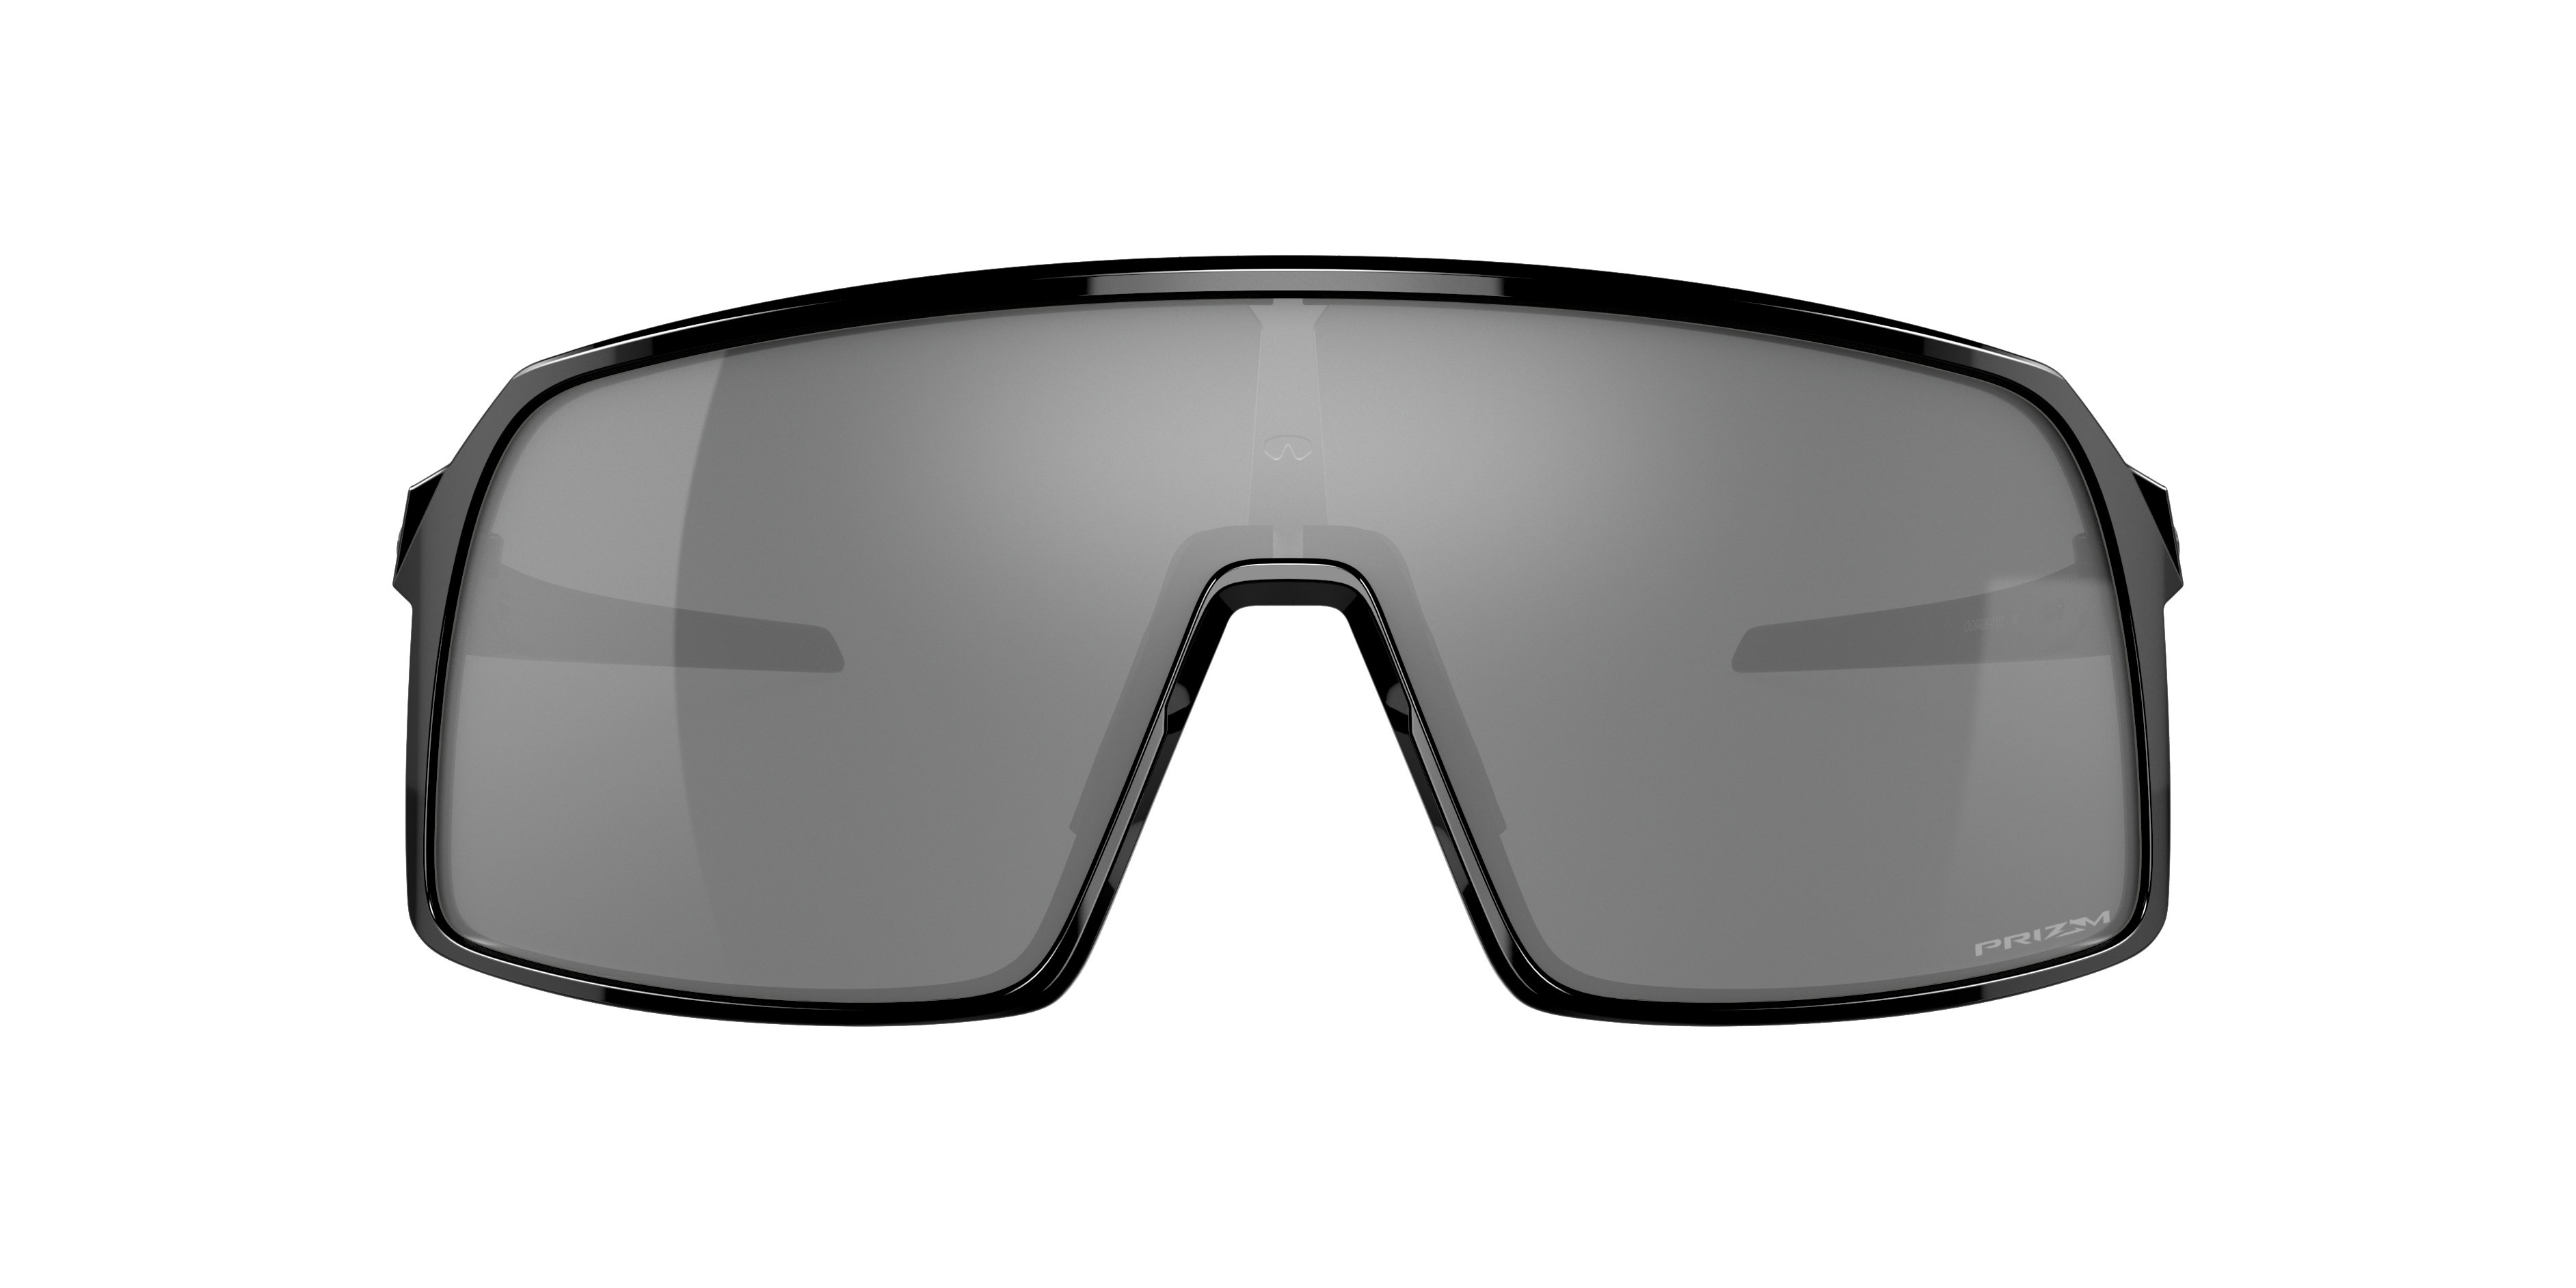 de sol graduadas | LensCrafters®: gafas oftálmicas graduadas y lentes de contacto​​​​​​​